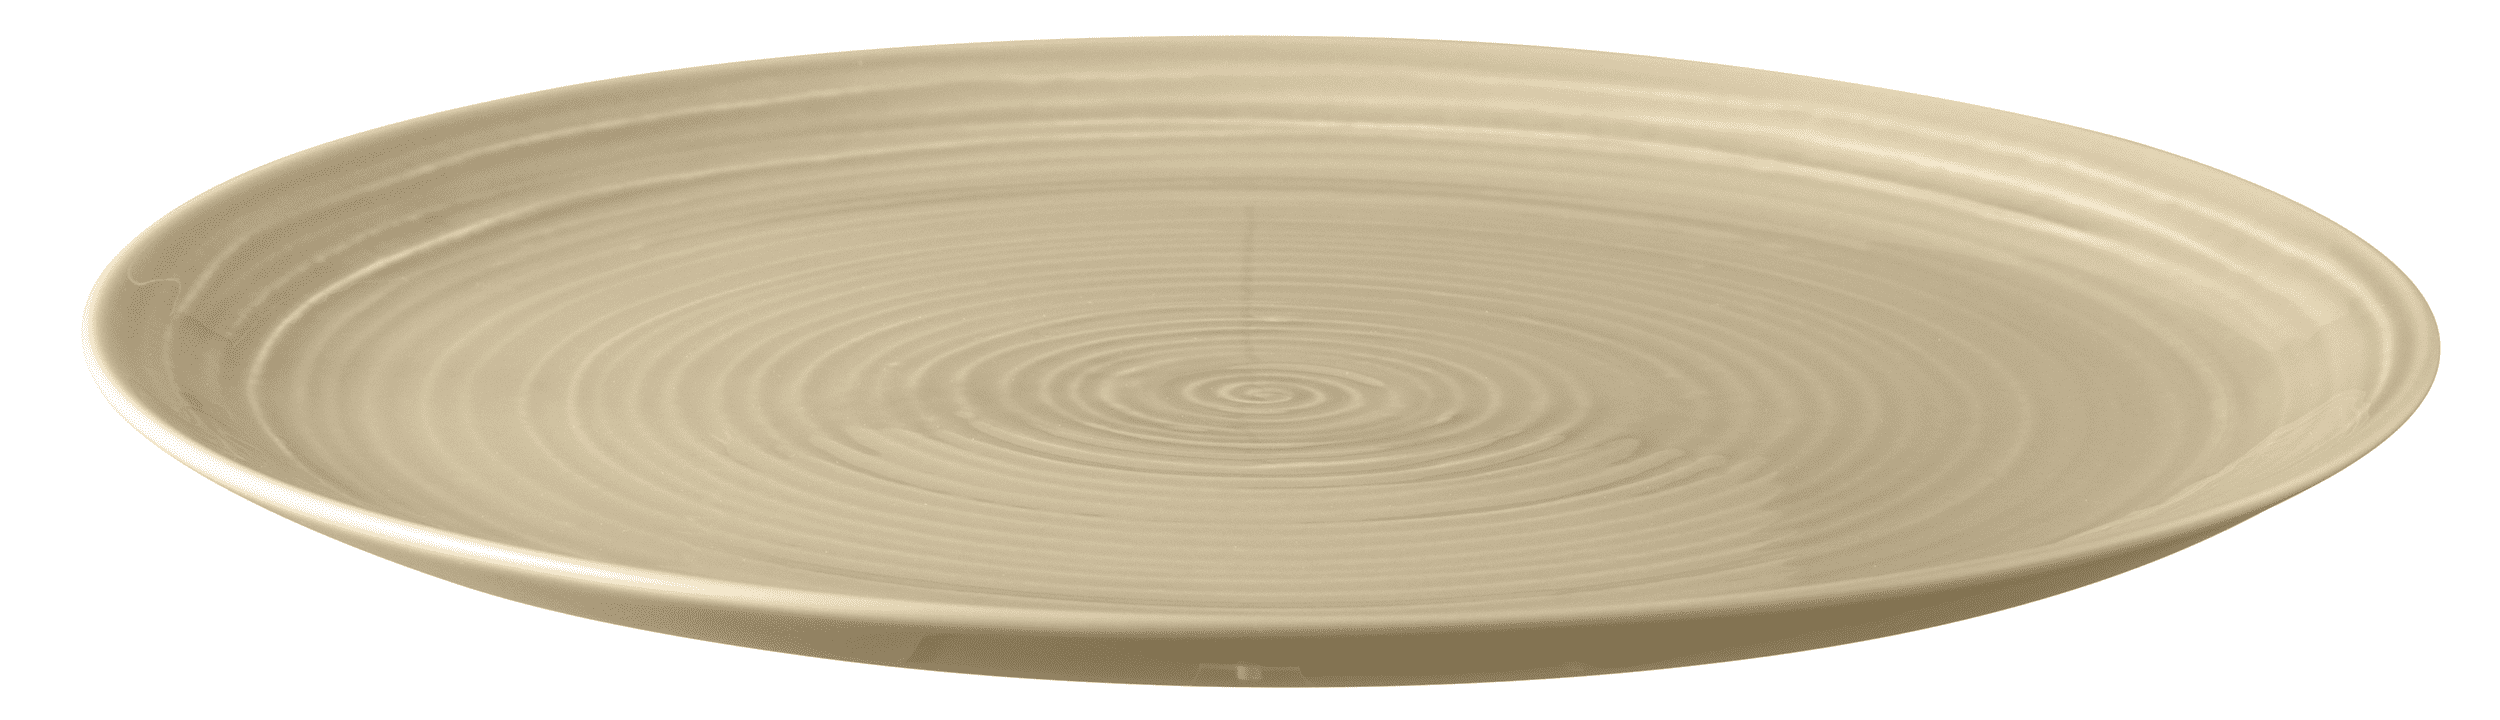 Seltmann Porzellan Terra Sandbeige Speiseteller rund 27,5 cm